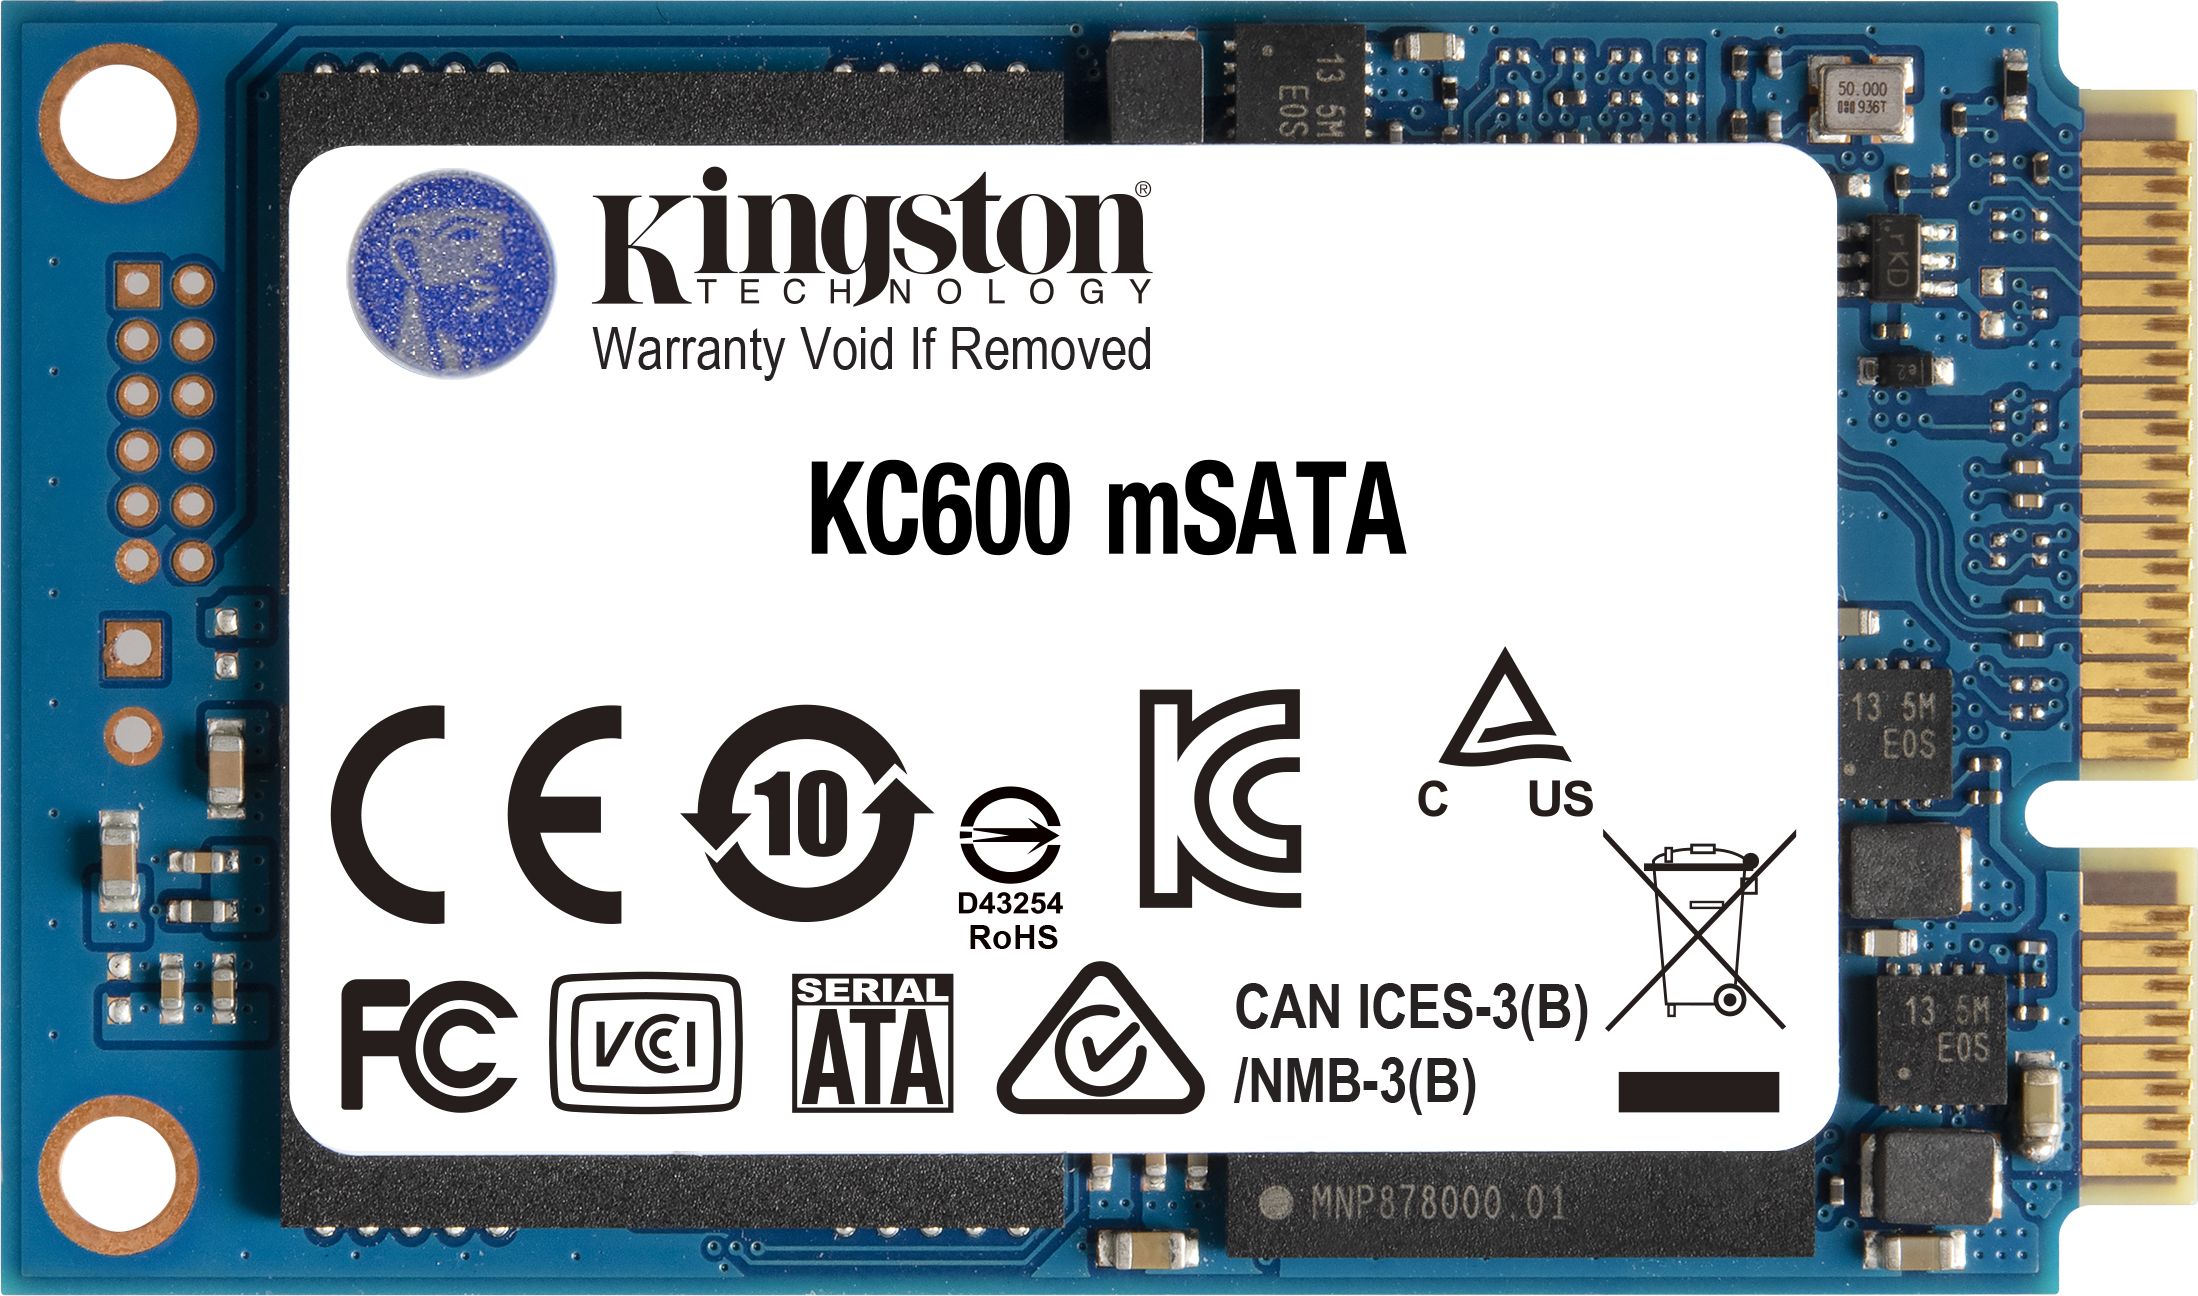 Kingston KC600 256 GB mSATA SATA III (SKC600MS/256G) SSD disks